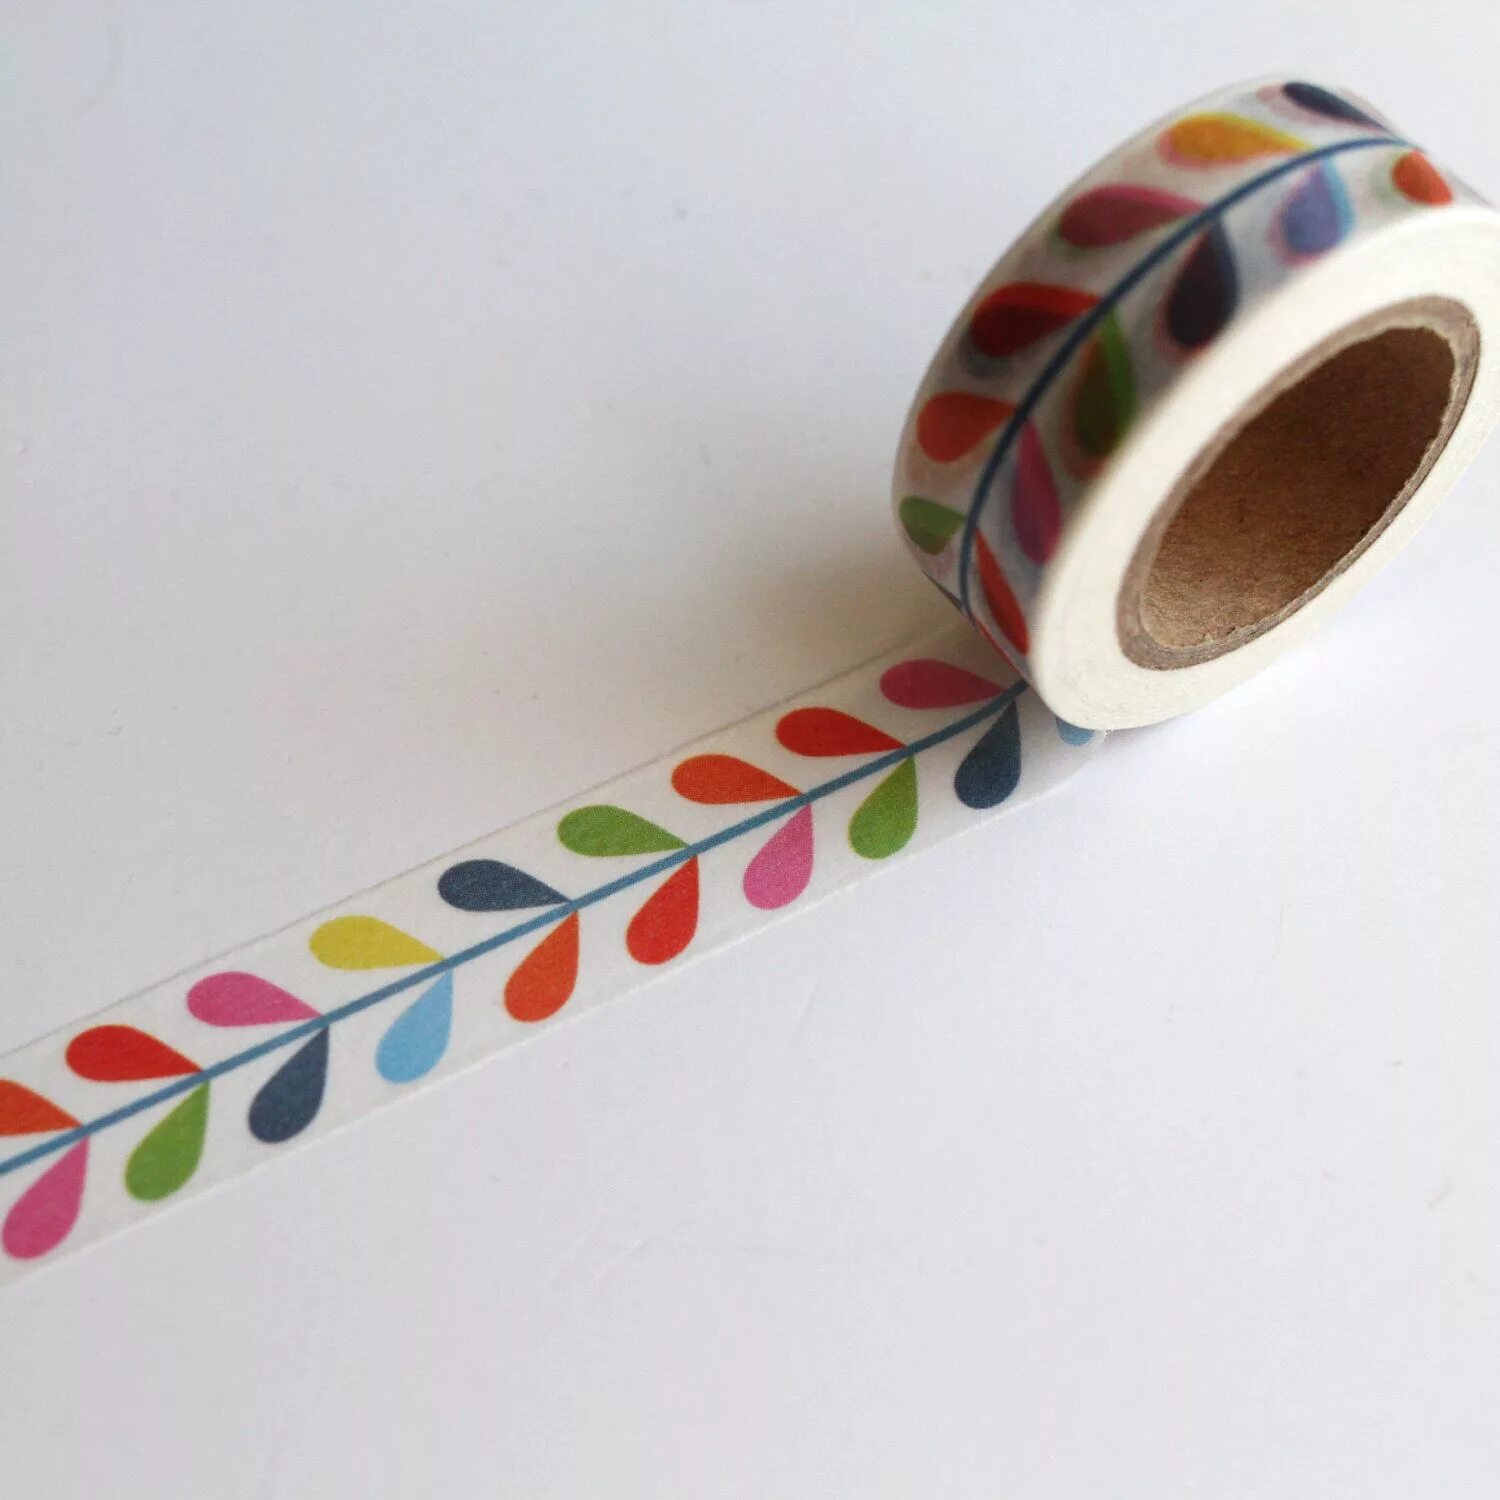 Washi Tape скотч декоративный. Rainbow Tape скотч. Поделки со скотчем. Скотч рисунок. Хобби скотч